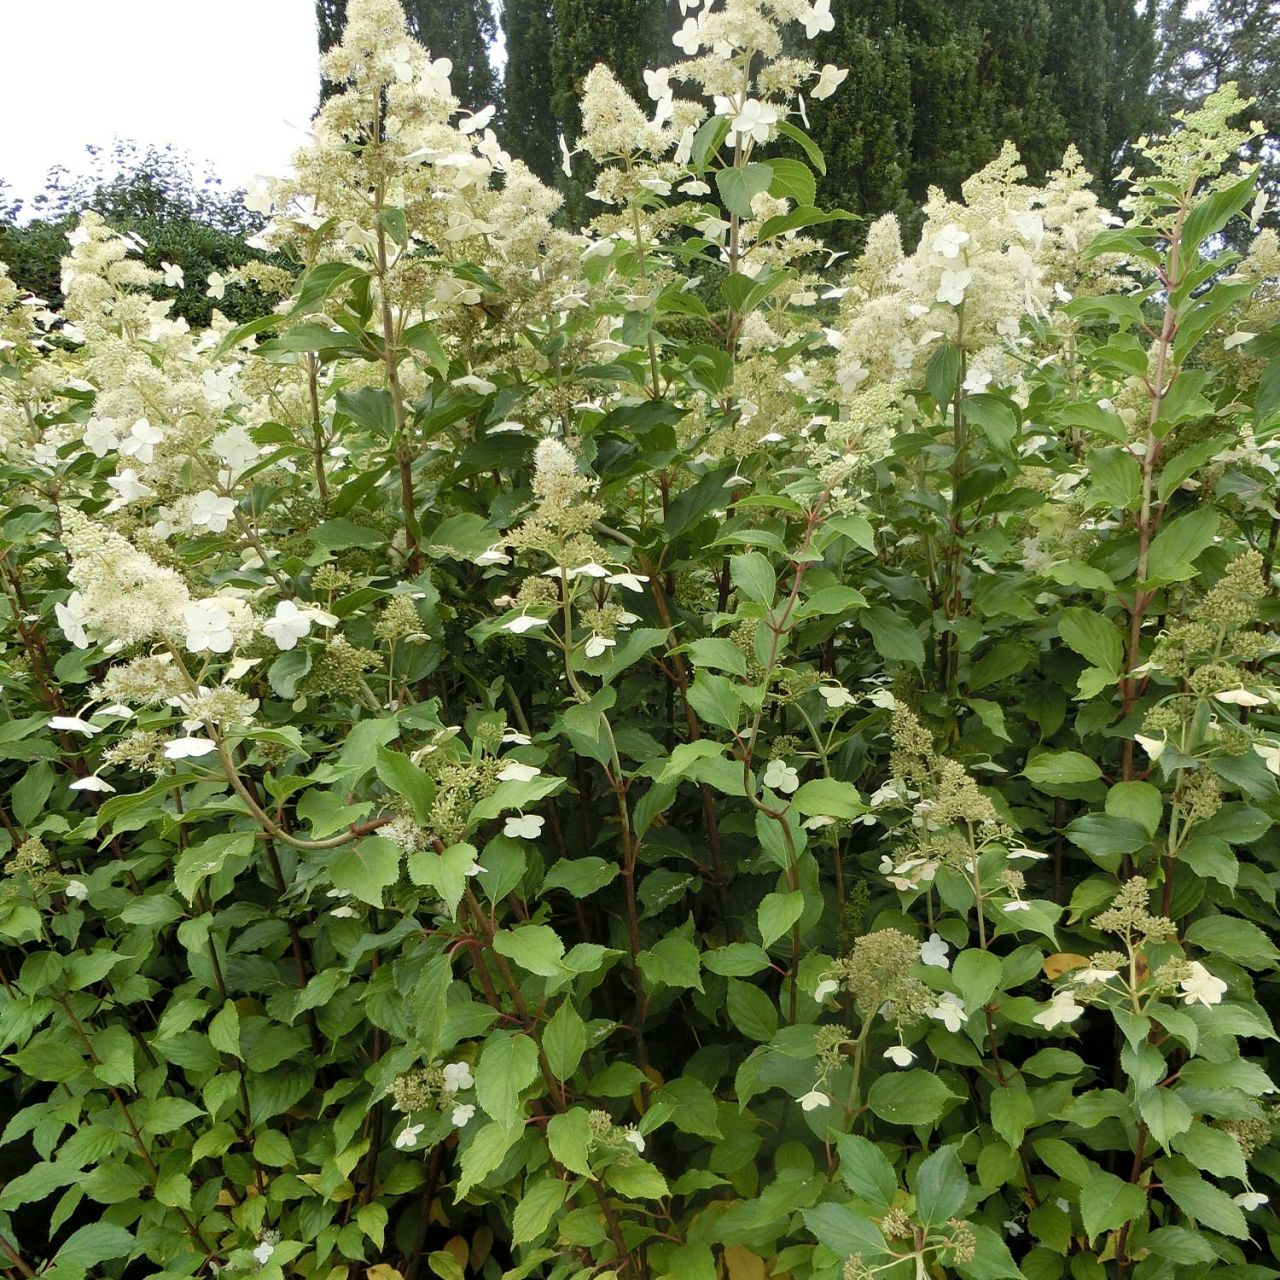 Kategorie <b>Blütensträucher und Ziergehölze </b> - Rispenhortensie 'Kyushu' - Hydrangea paniculata 'Kyusha'